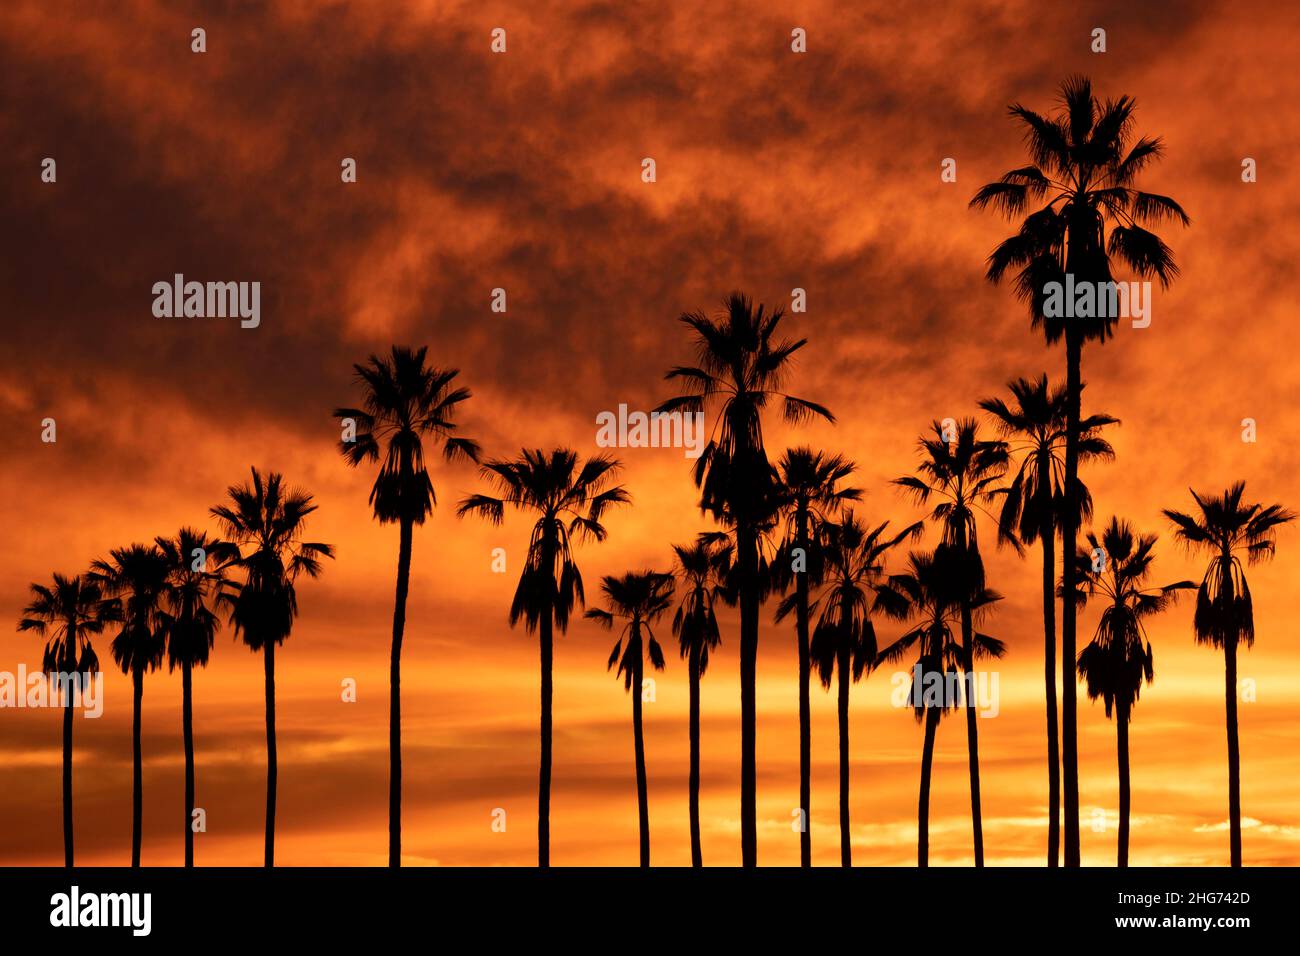 Silhouette di una linea di alte palme contro un tramonto d'oro e arancione a Los Angeles, California Foto Stock